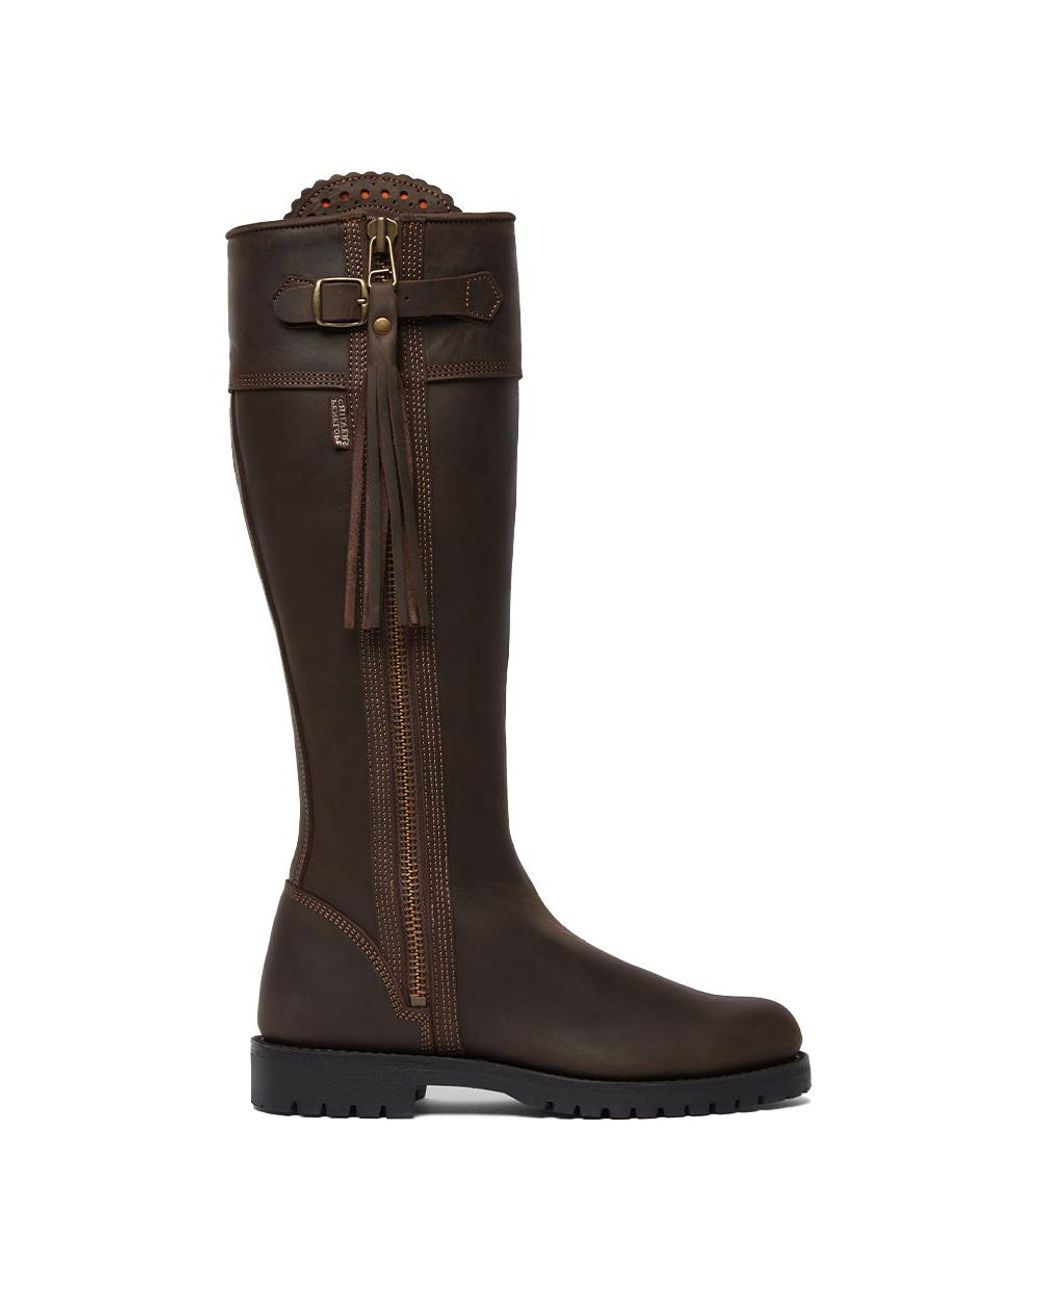 Penelope Chilvers Velvet Ladies Standard Tassel Boot in Brown | Lyst